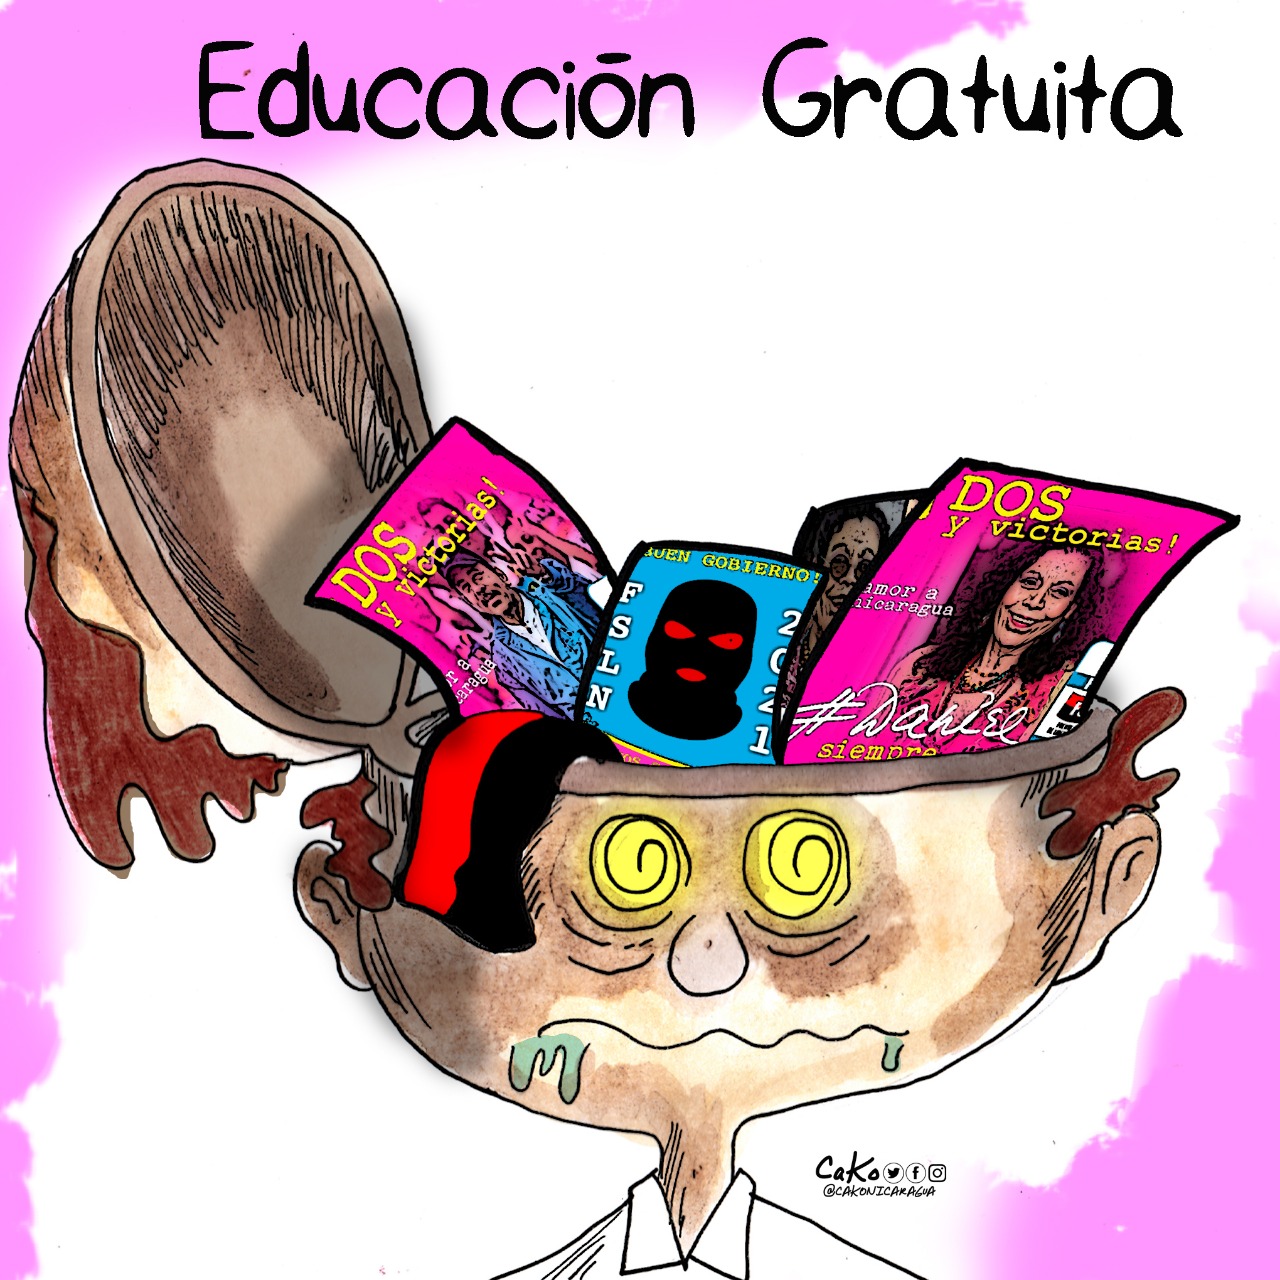 La Caricatura: Educación gratuita en Nicaragua